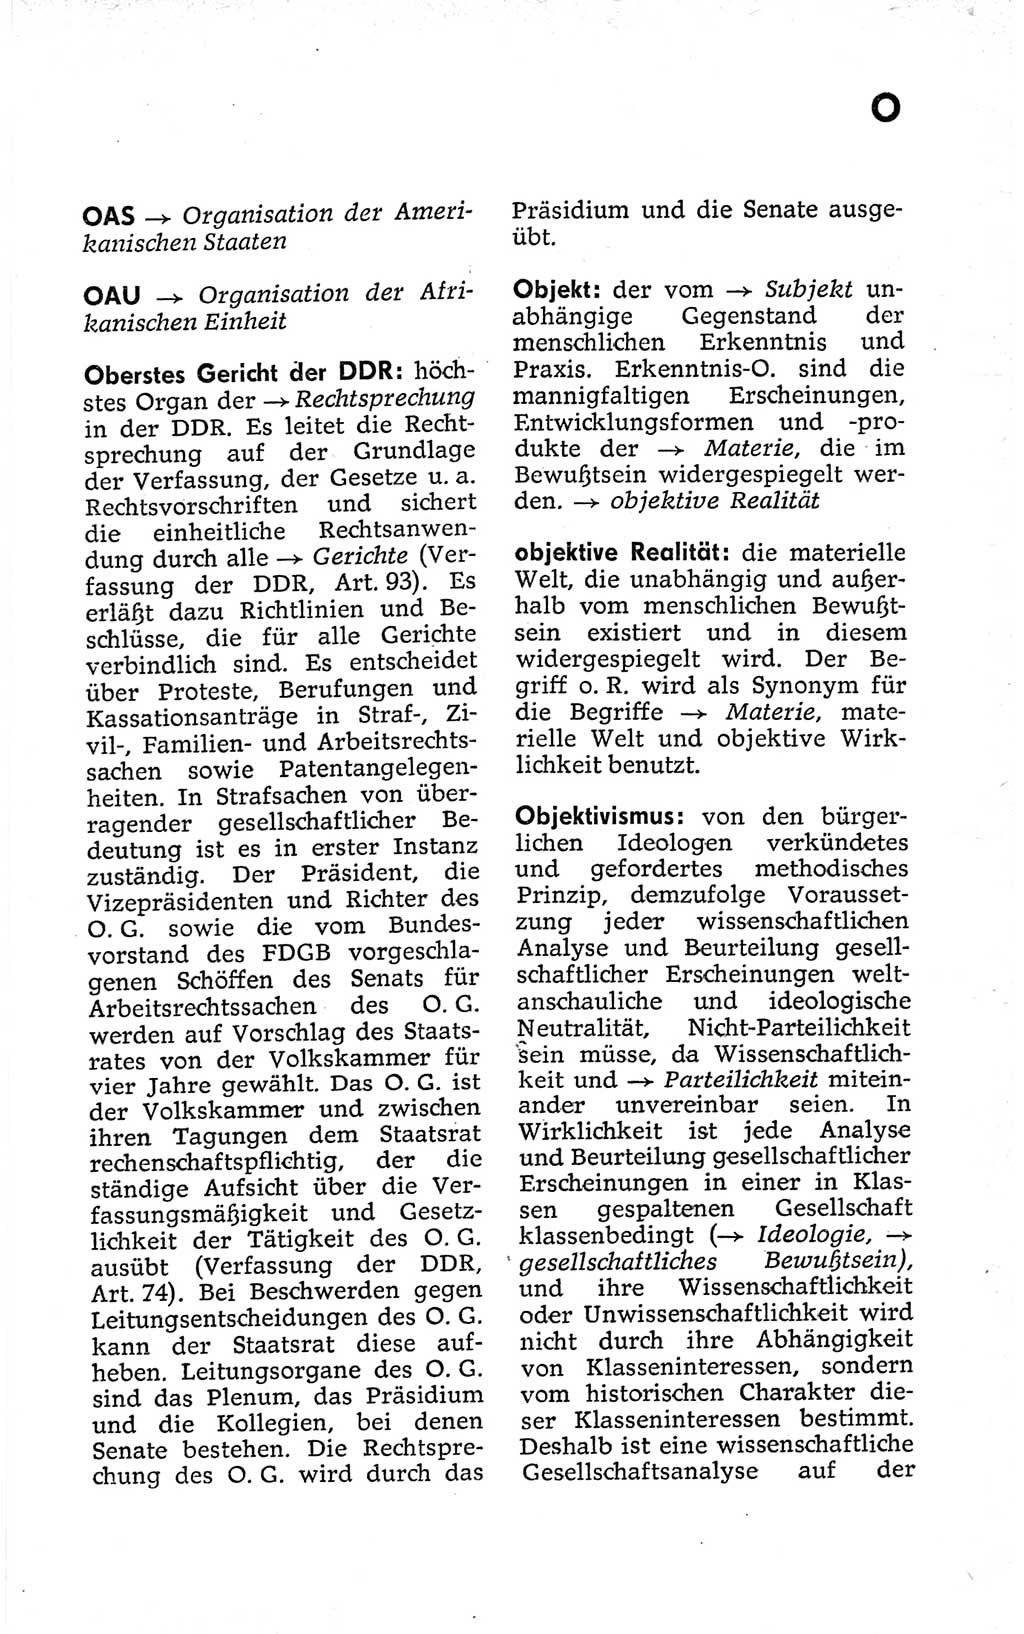 Kleines politisches Wörterbuch [Deutsche Demokratische Republik (DDR)] 1973, Seite 605 (Kl. pol. Wb. DDR 1973, S. 605)